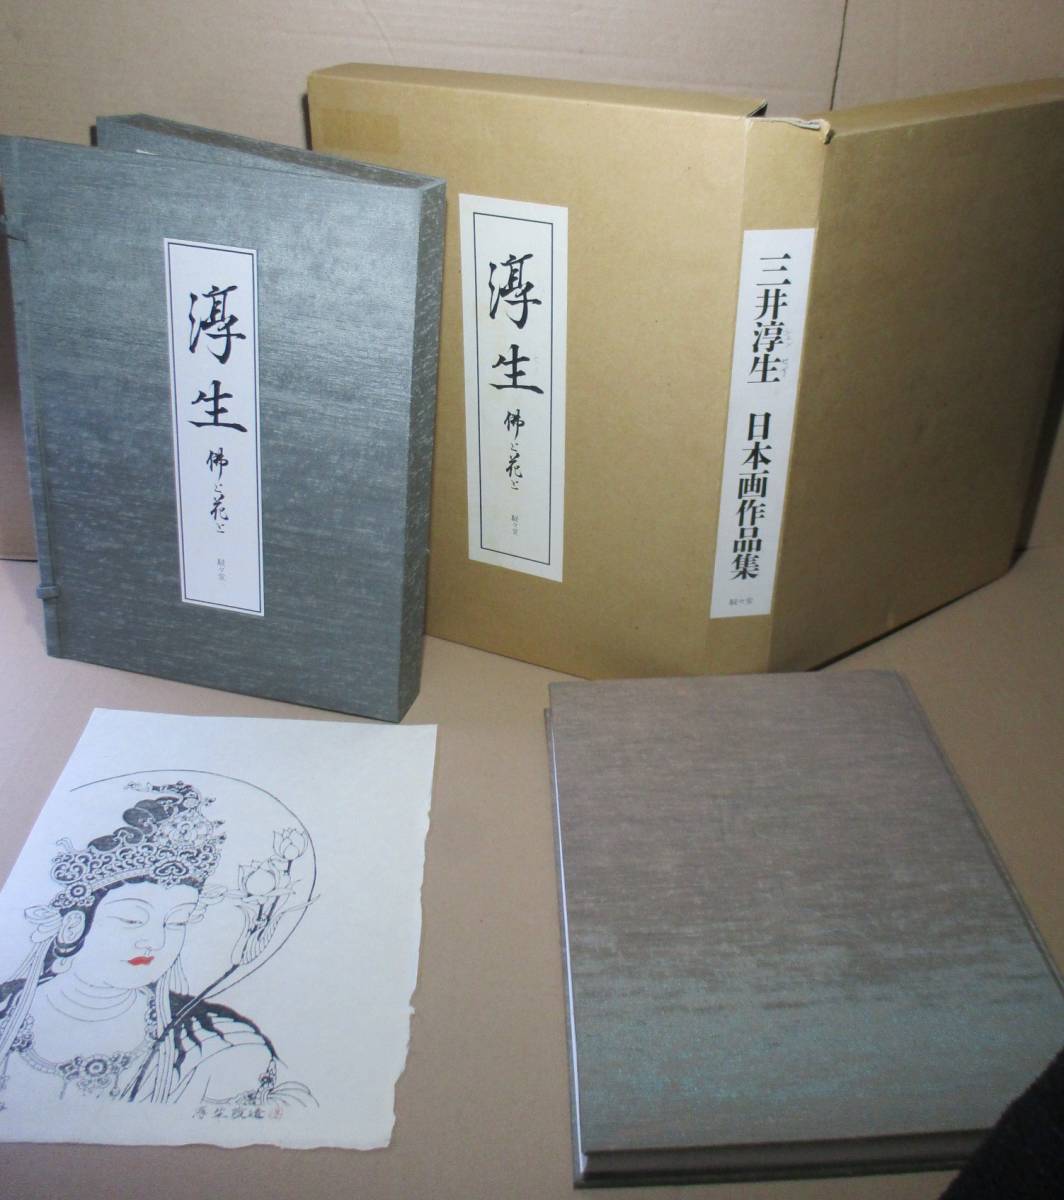 □ 목판화 1권의 한정판, 아츠오, 미츠이 아츠오(Mitsui Atsuo)의 부처와 꽃; 진진도, 1994년; 외부 상자가 포함된 초판; 책과 책은 모두 천으로 제본되어 있습니다. 기타가와 미치아키(Michiaki Kitagawa)가 명명함. 첫 페이지에 인물 사진 157장 포함, 그림, 그림책, 수집, 그림책